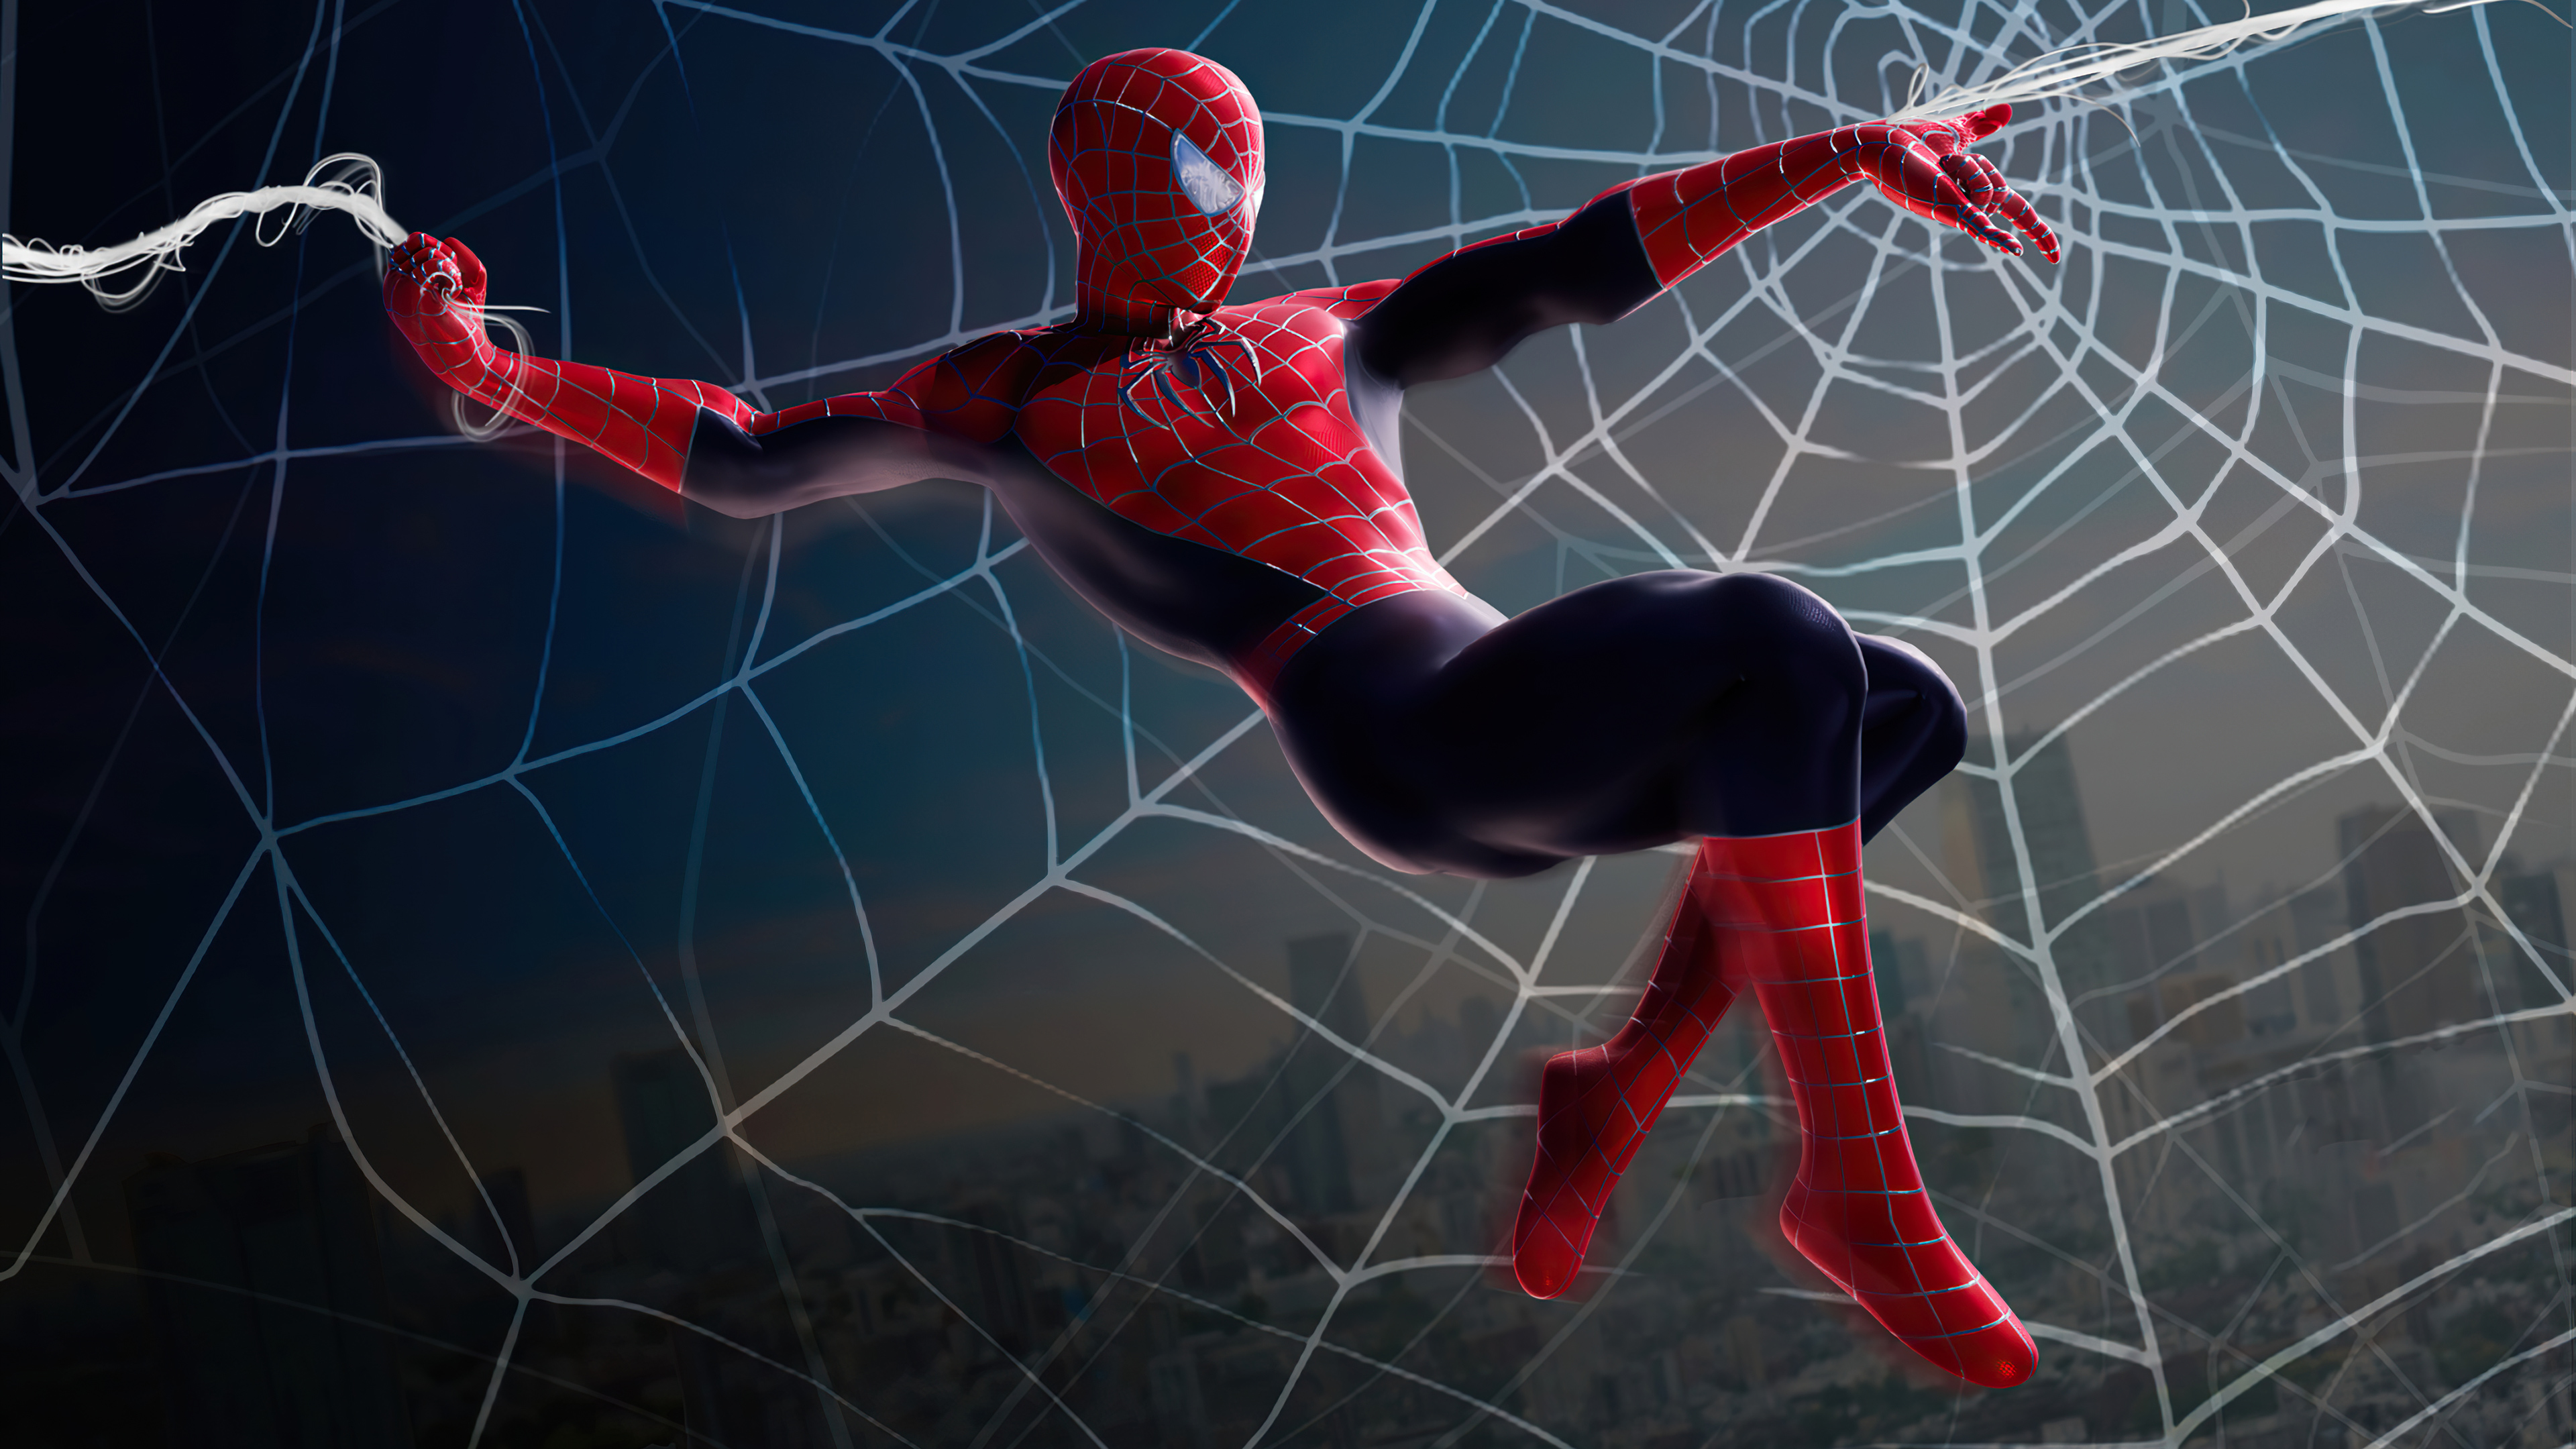 Crean dispositivo para lanzar telarañas al estilo Spider-Man 